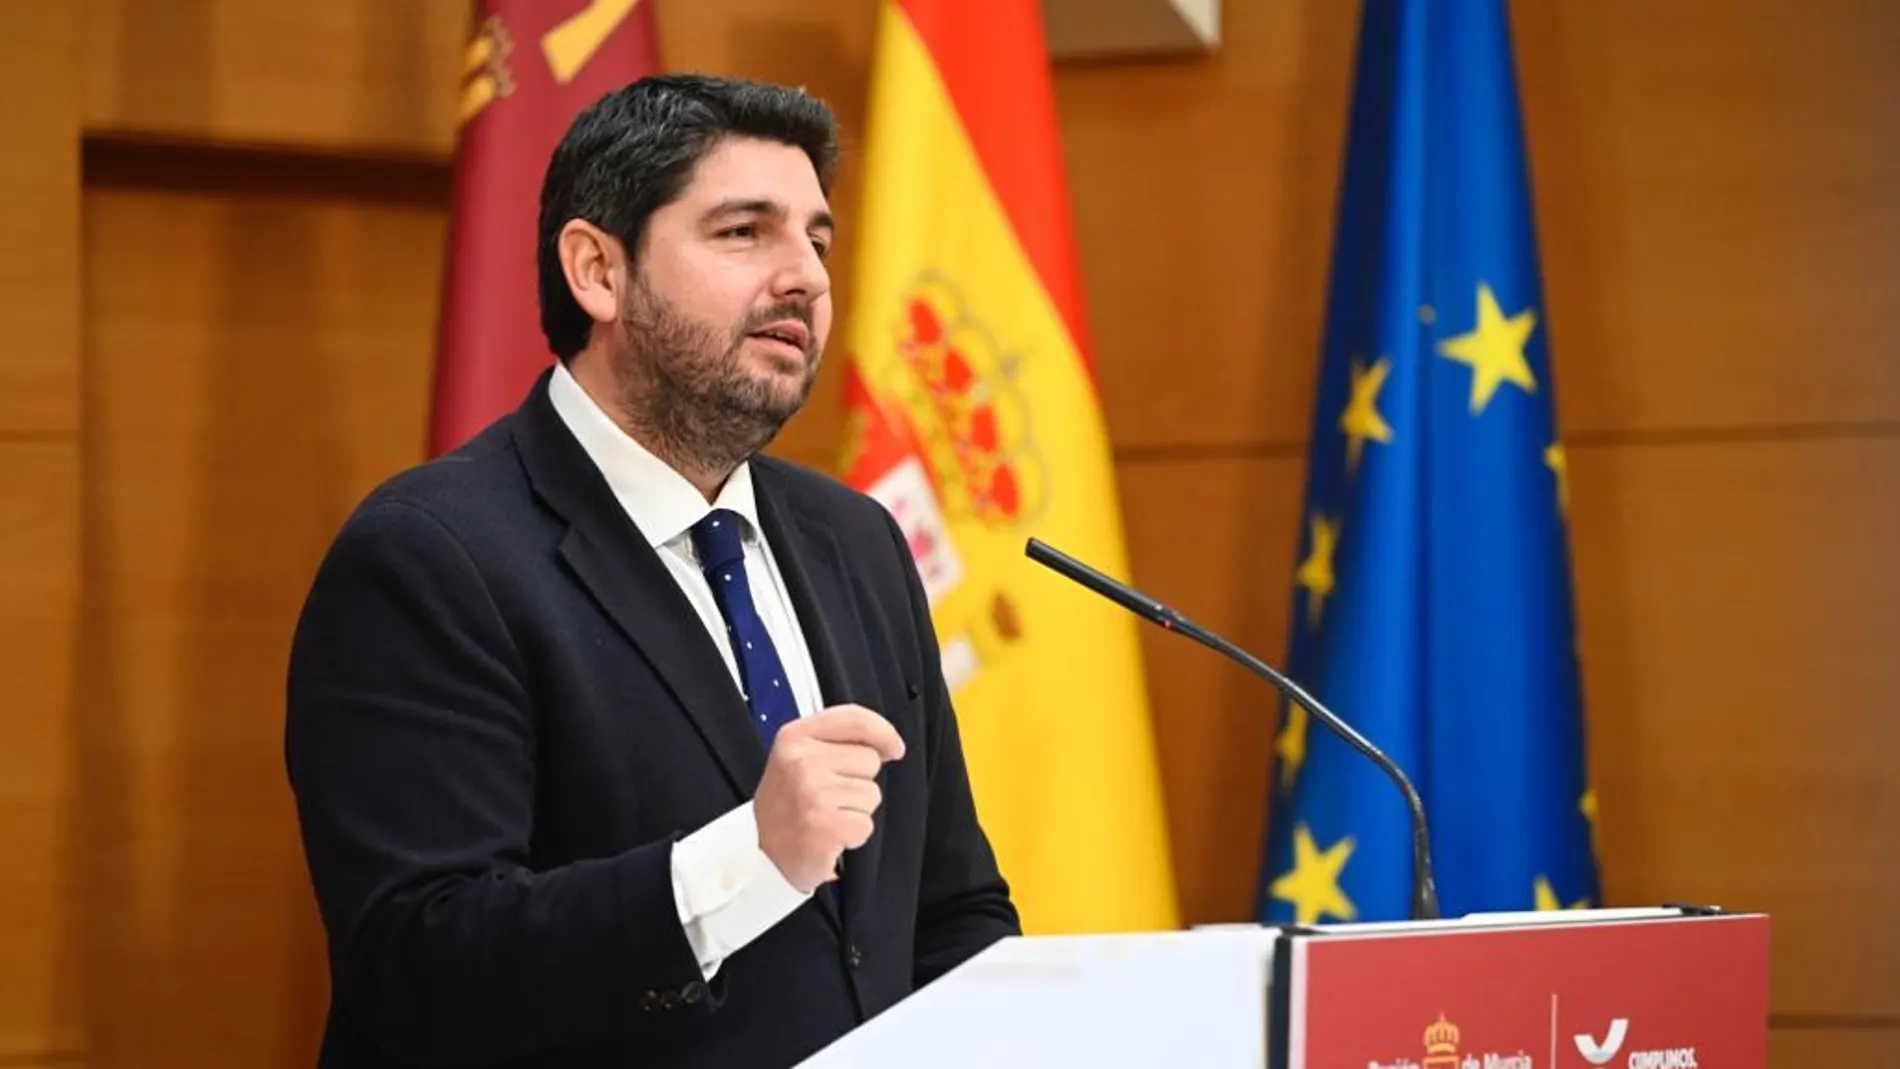 El presidente de la Comunidad, Fernando López Miras, presentó hoy el balance de la acción del Gobierno de la Región de Murcia durante la legislatura 2019-2023